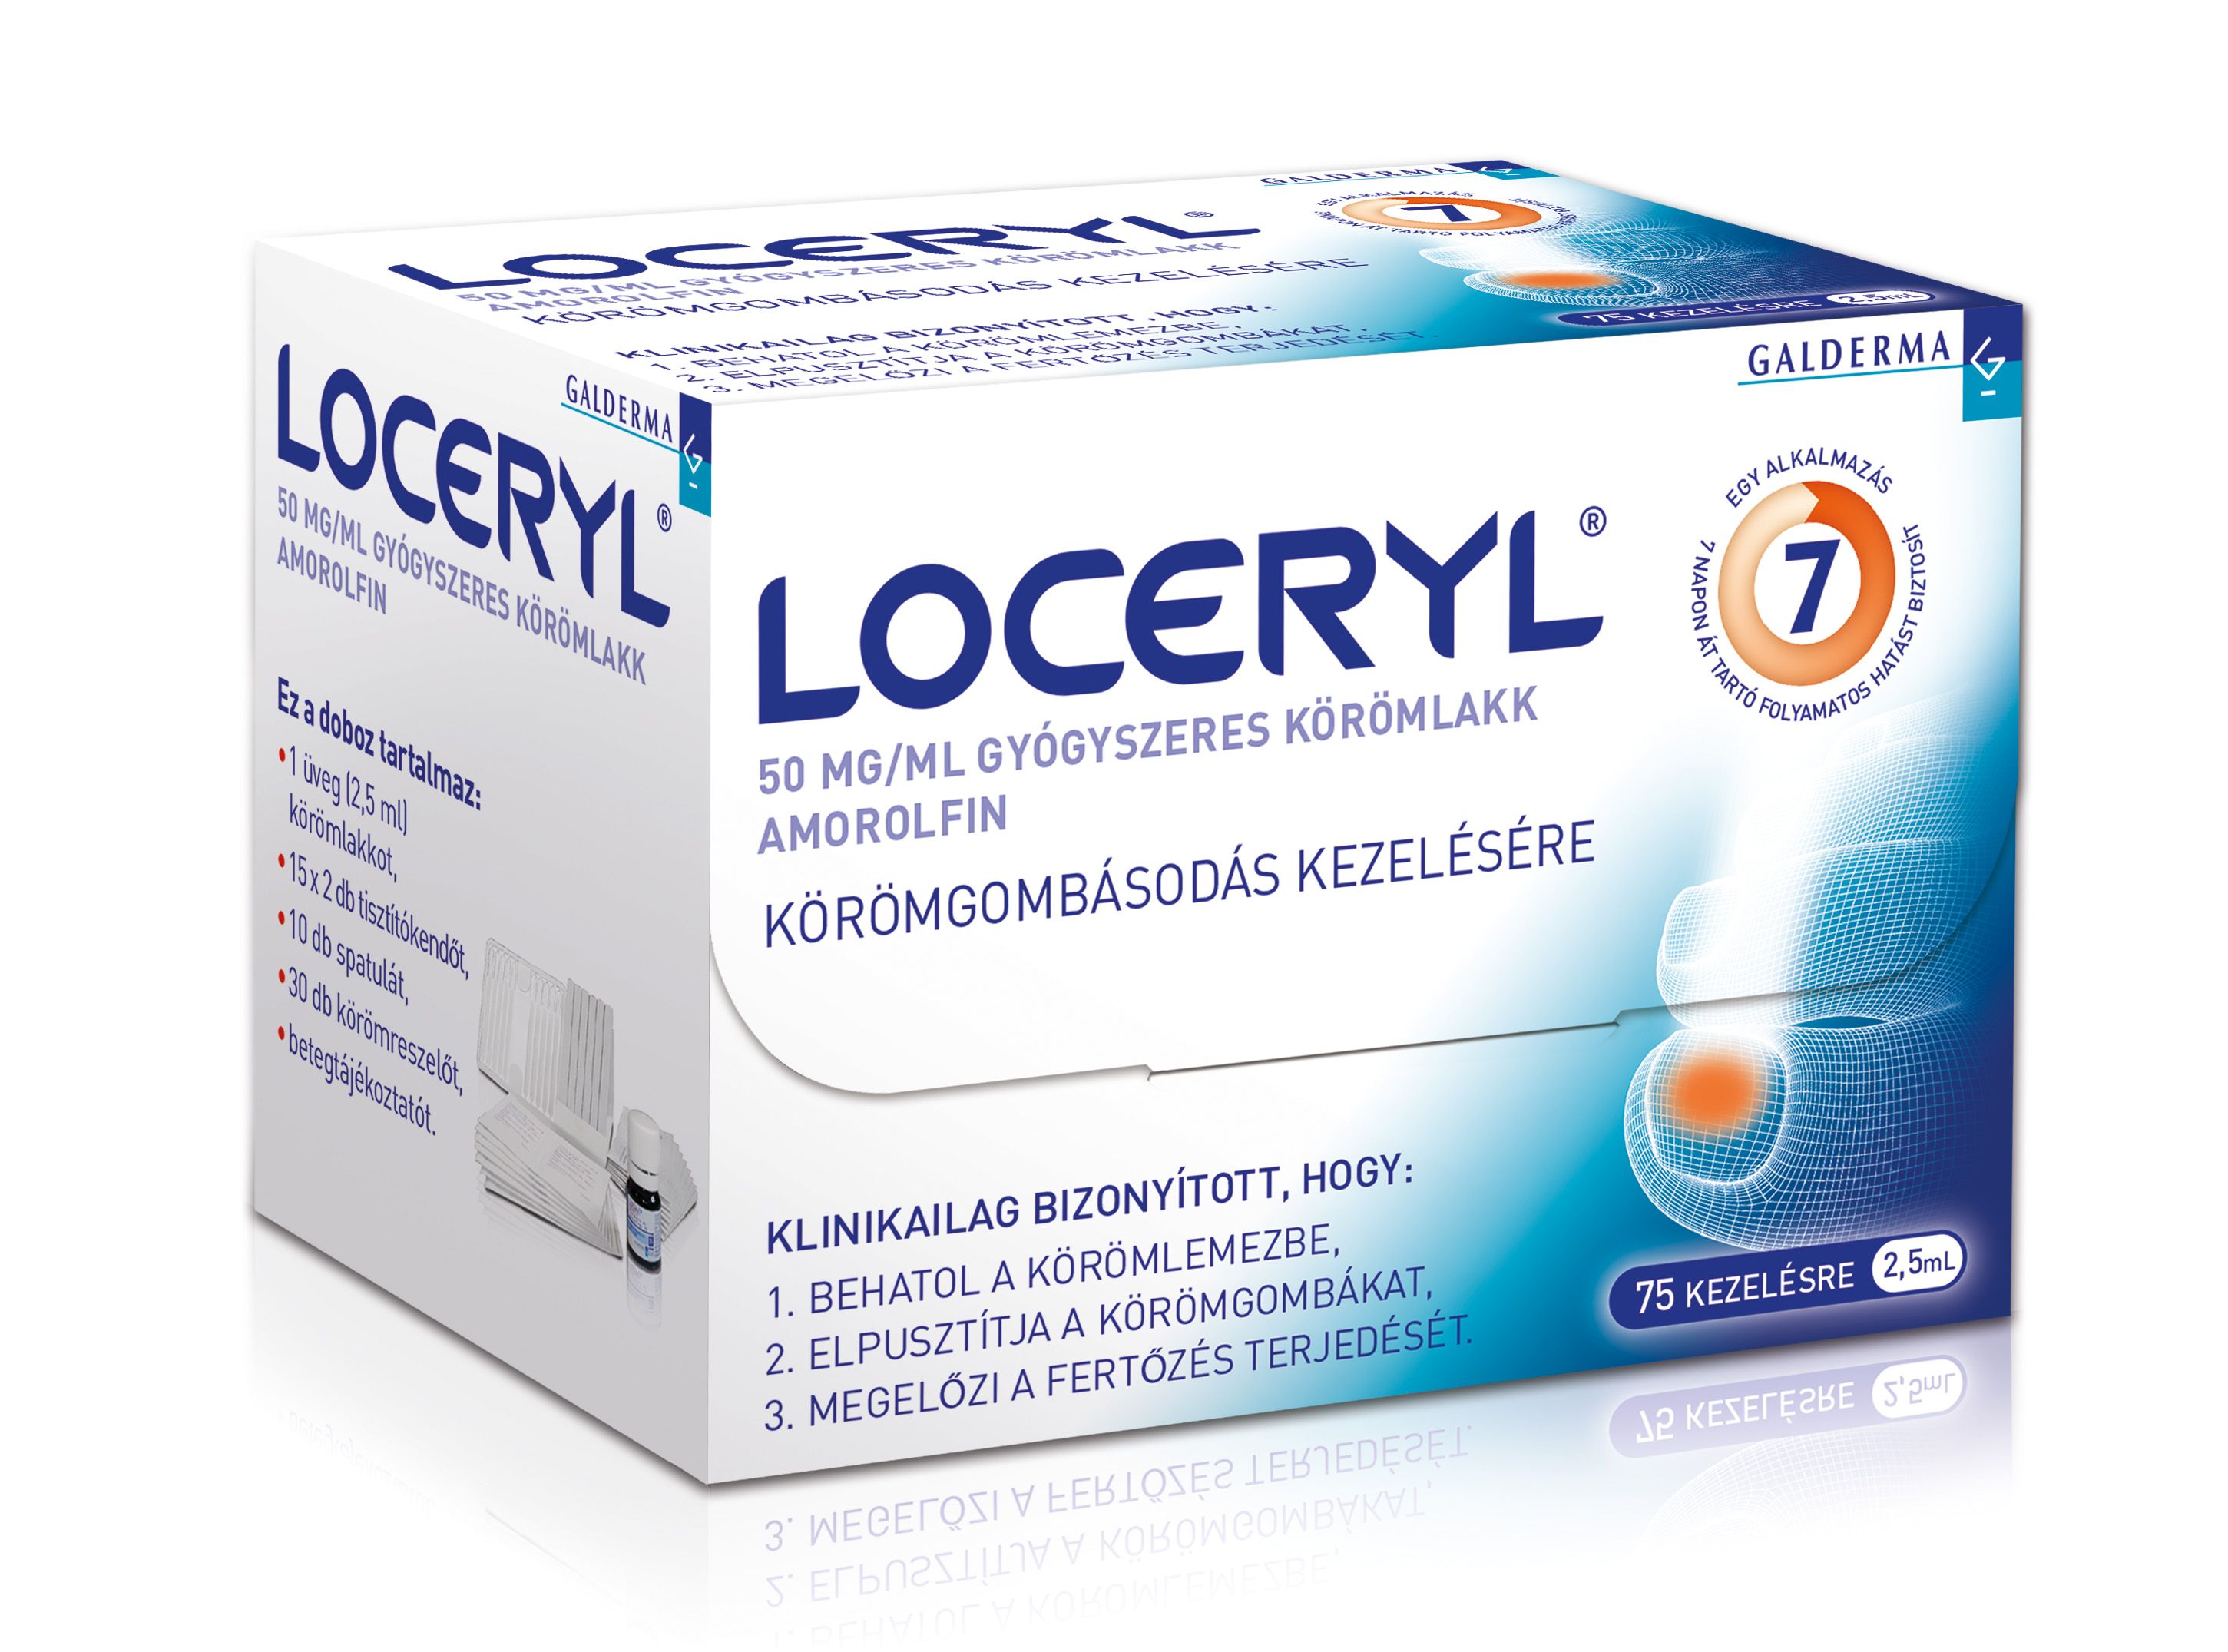 Loceryl 50 mg/ml gyógyszeres körömlakk - Széna Tér Patika